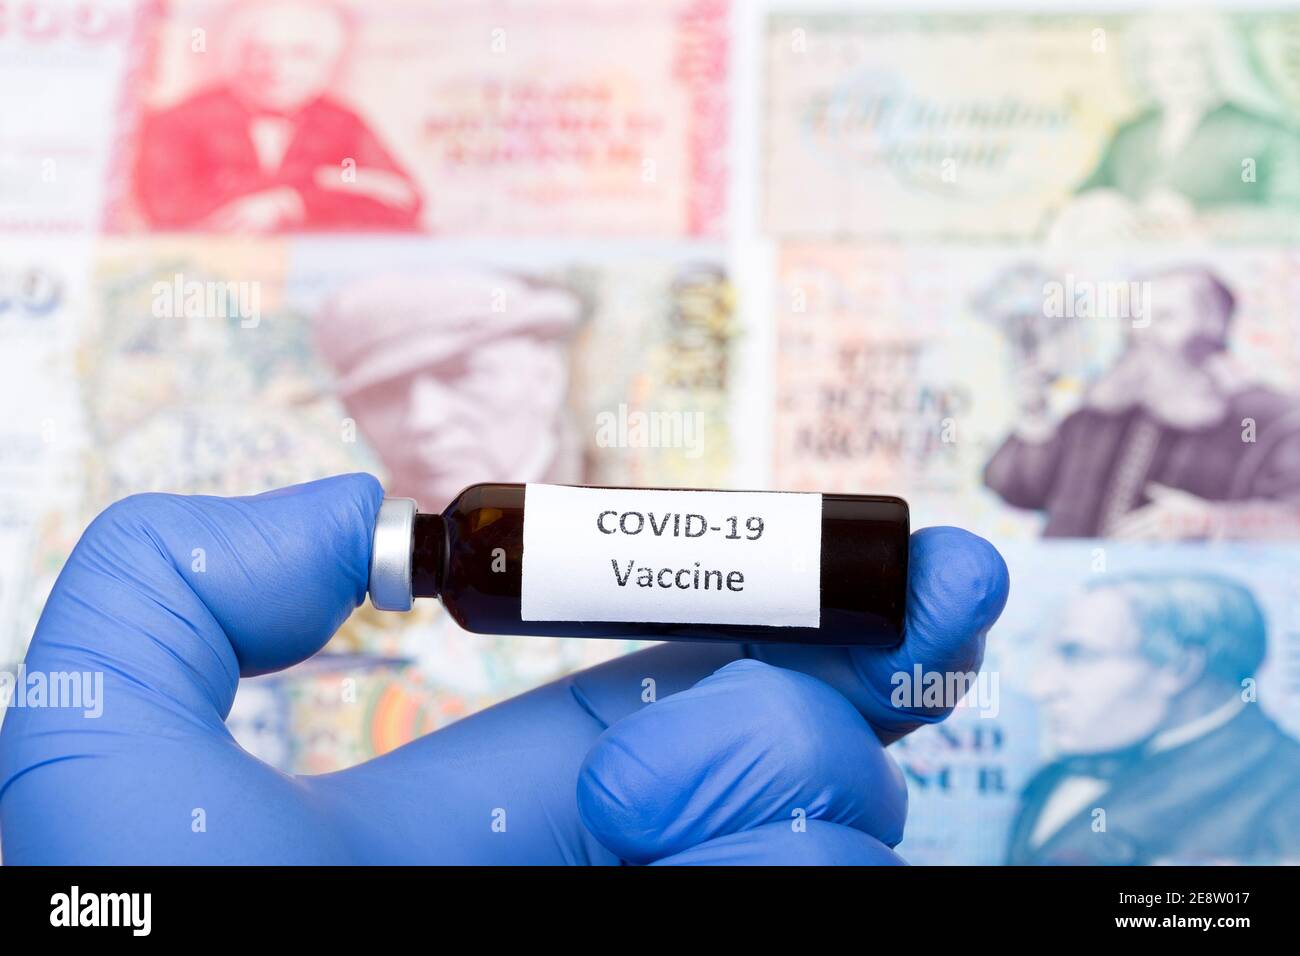 Vaccin contre Covid-19 sur fond de couronne islandaise Banque D'Images